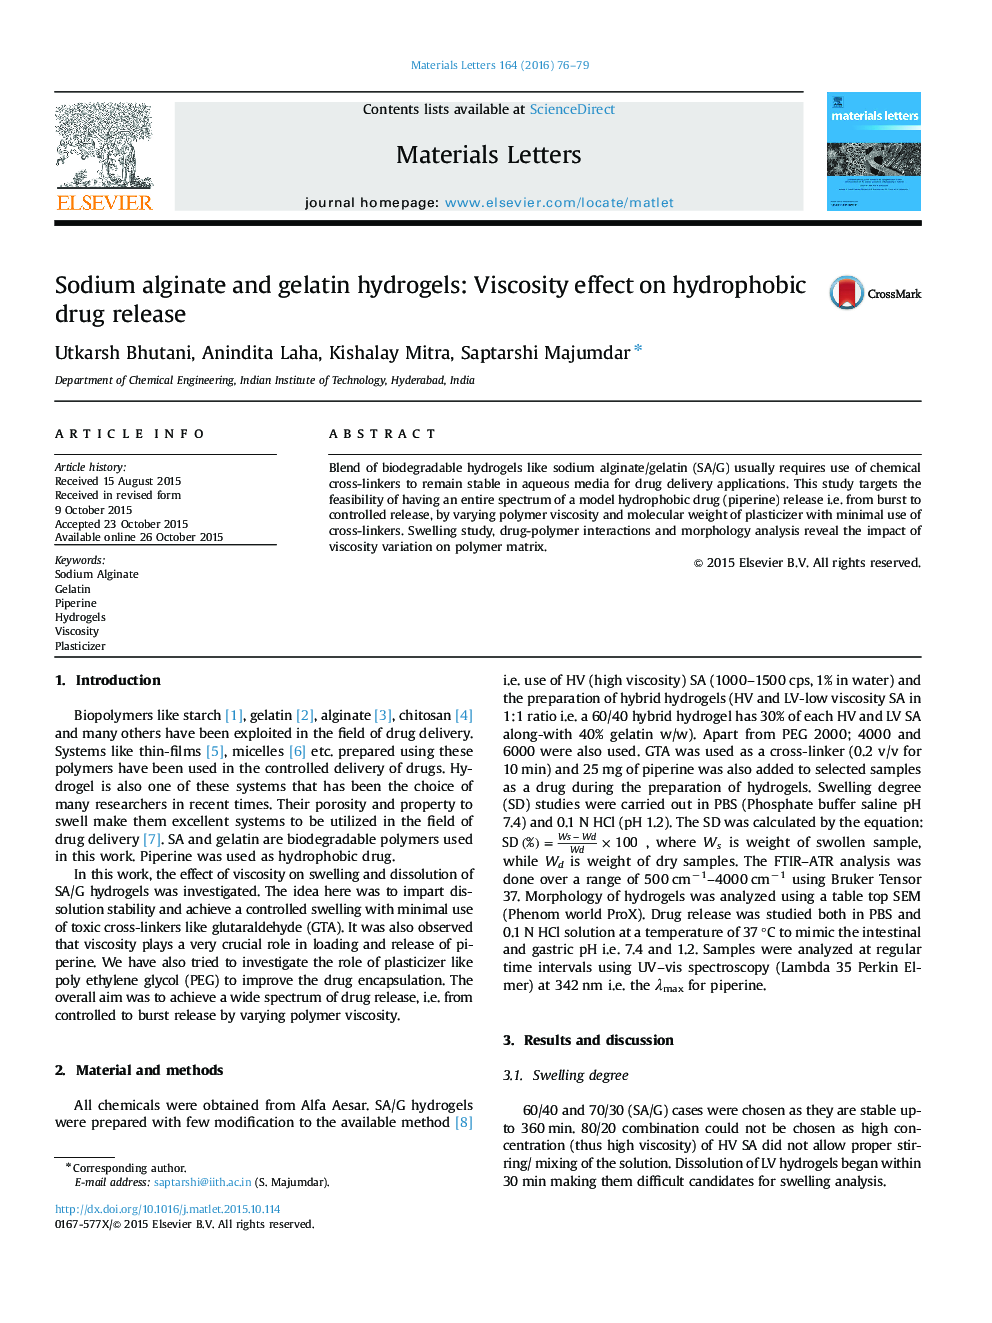 هیدروژل آلژینات سدیم و ژلاتین: اثر ویسکوزیته بر انتشار داروهای هیدروفوب 